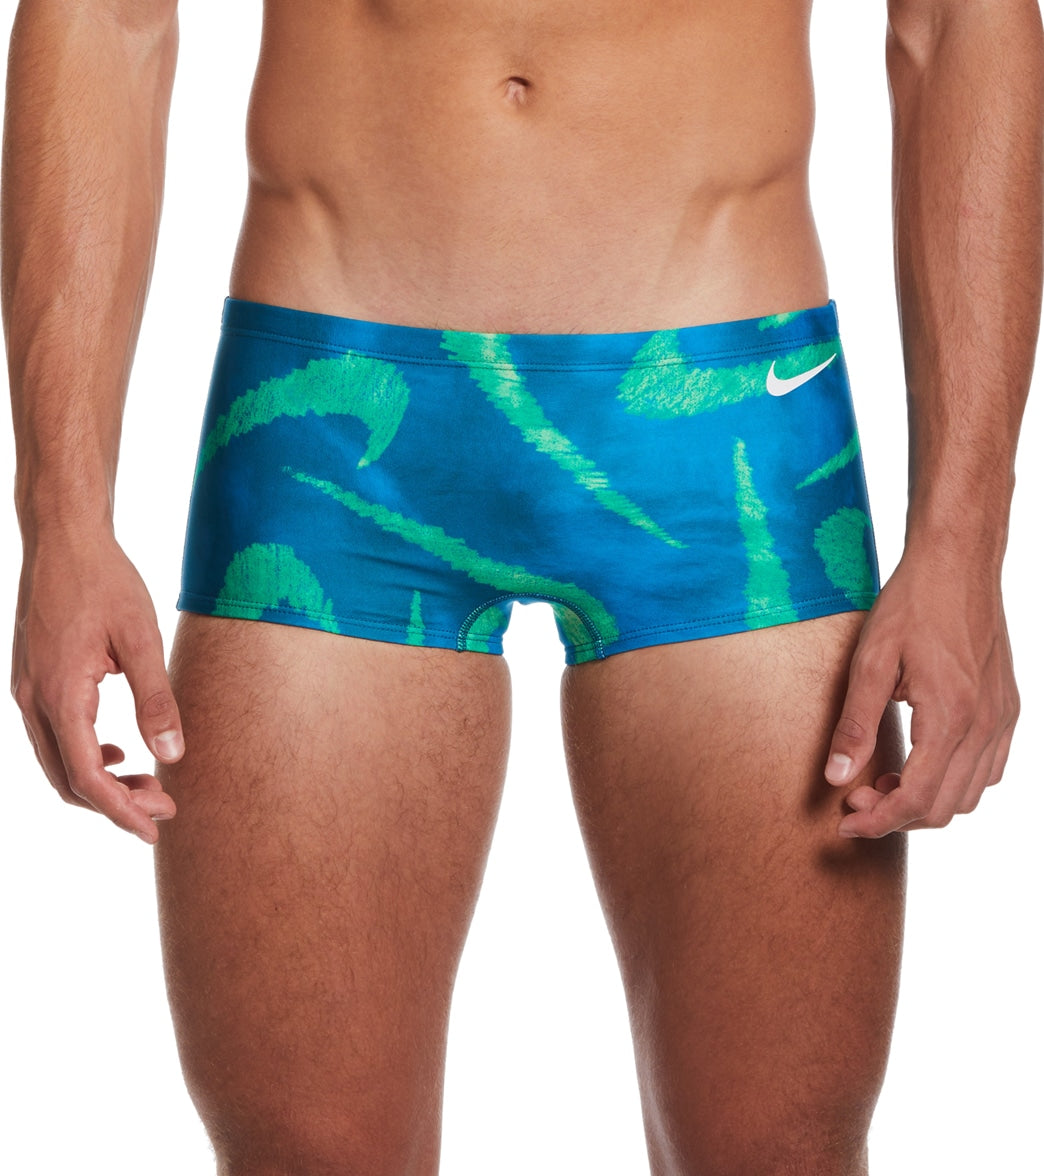 Nike Men's Multi Print Square Leg Swimsuit at SwimOutlet.com